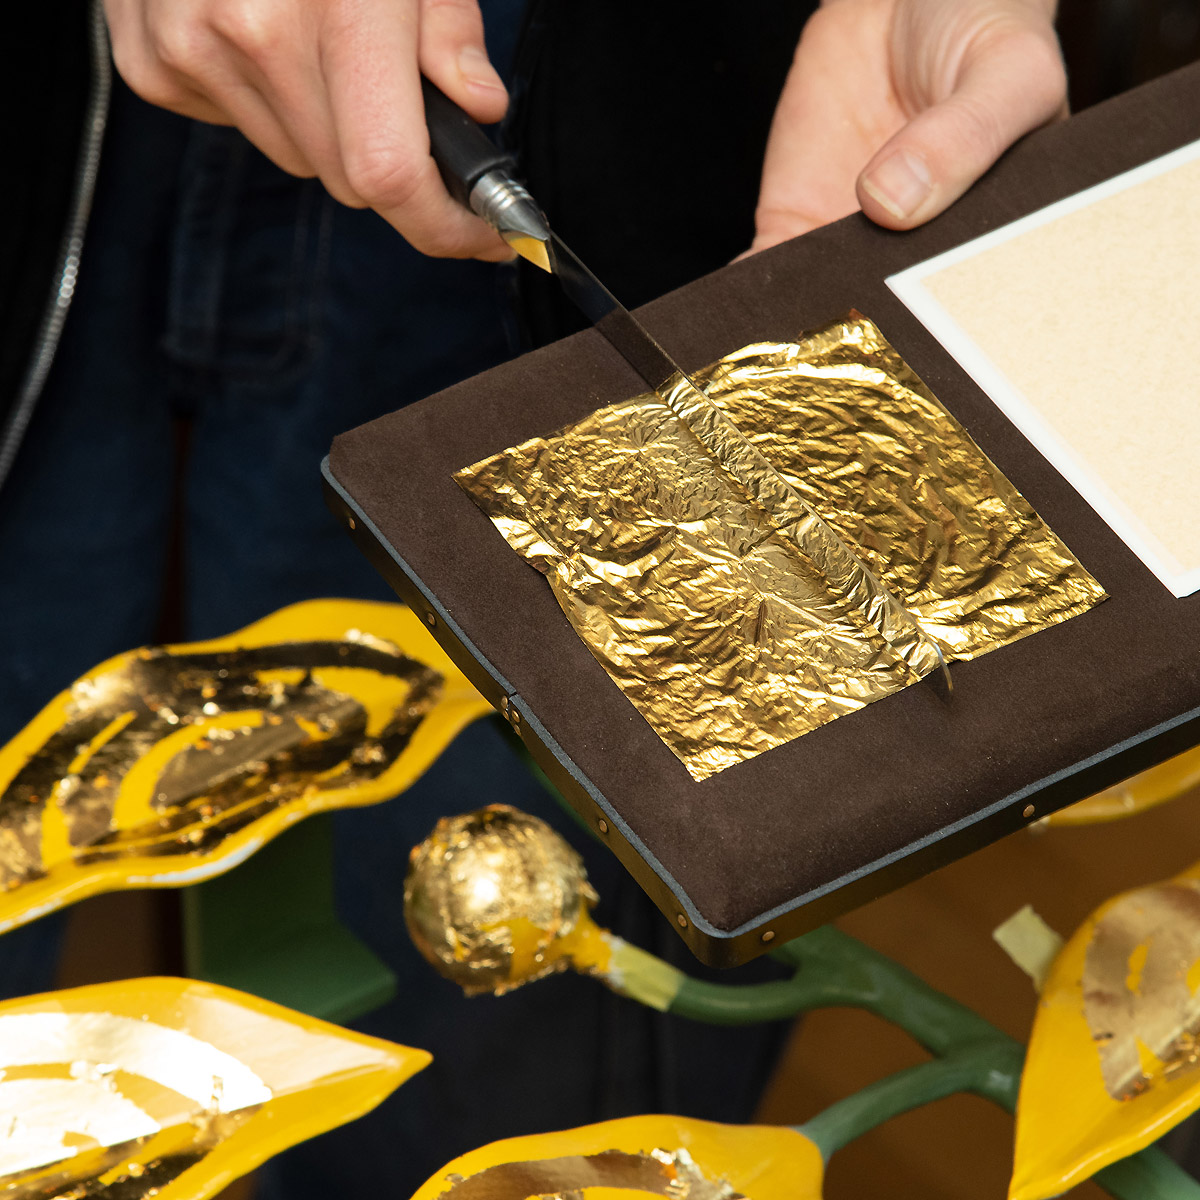 Vergoldungsprozess durch Goldsachs: von ruhiger Hand wird das Blattgold auf die präparierten Teile aufgetragen